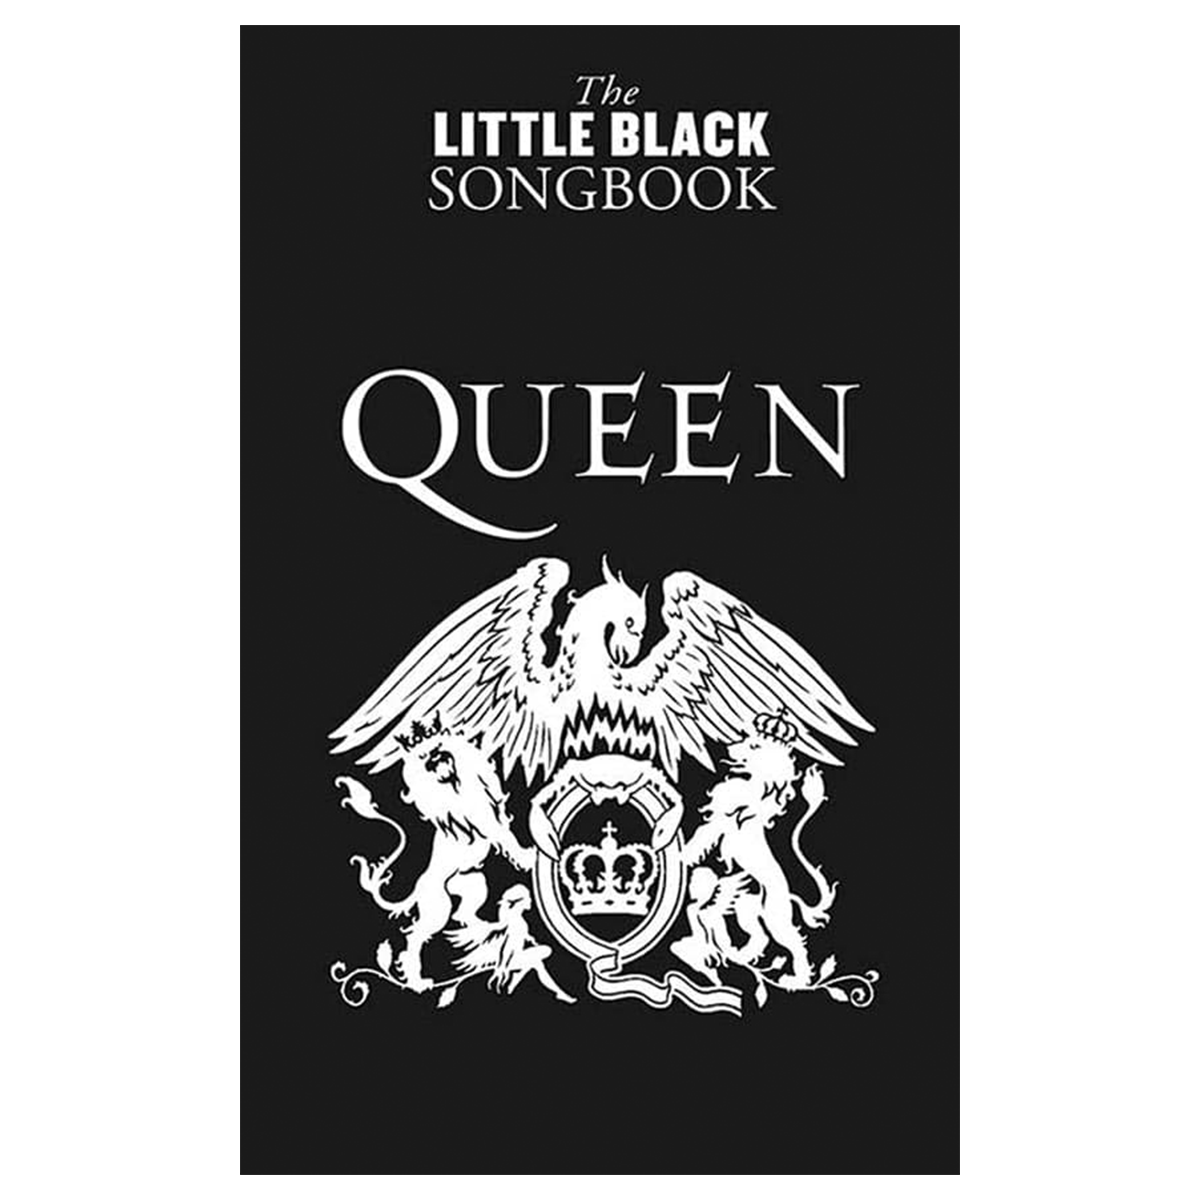 THE LITTLE BLACK SONGBOOK: Queen